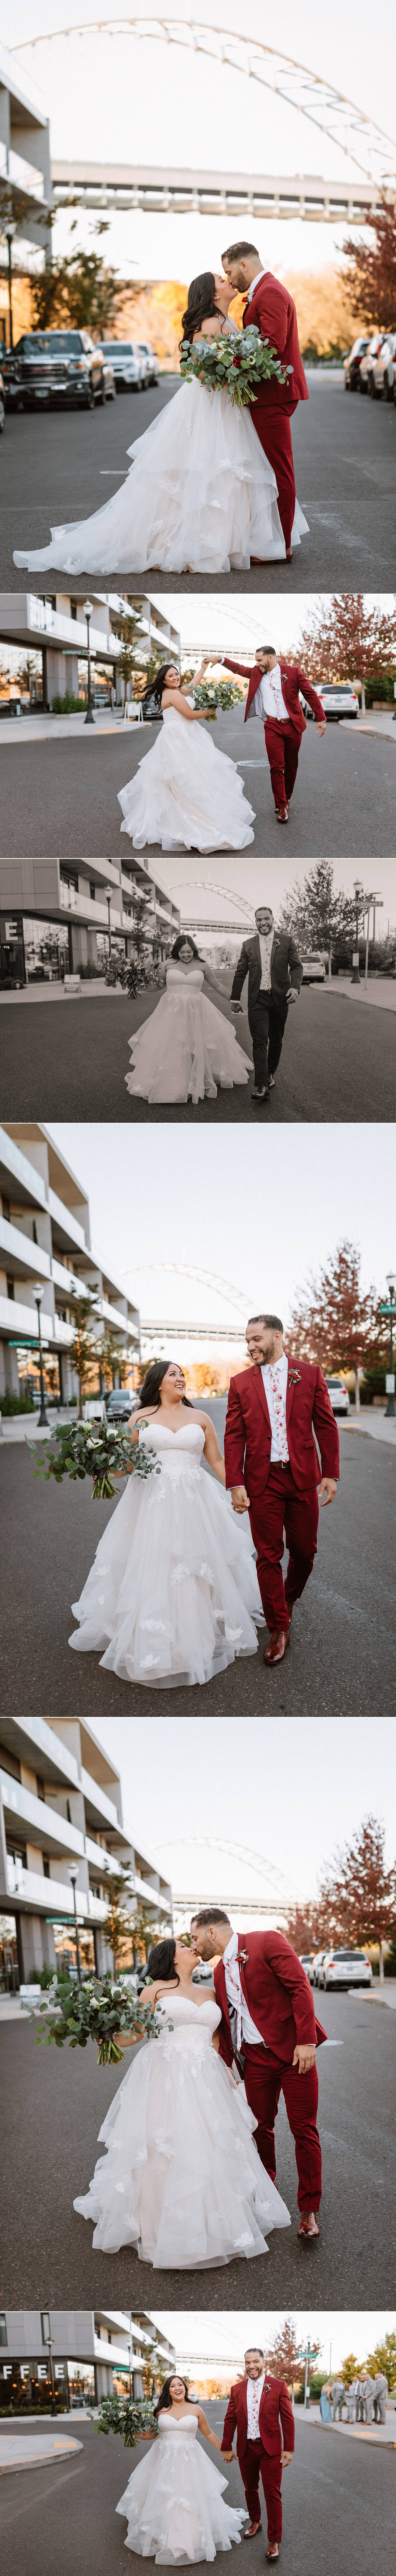 portland oregon bride and groom